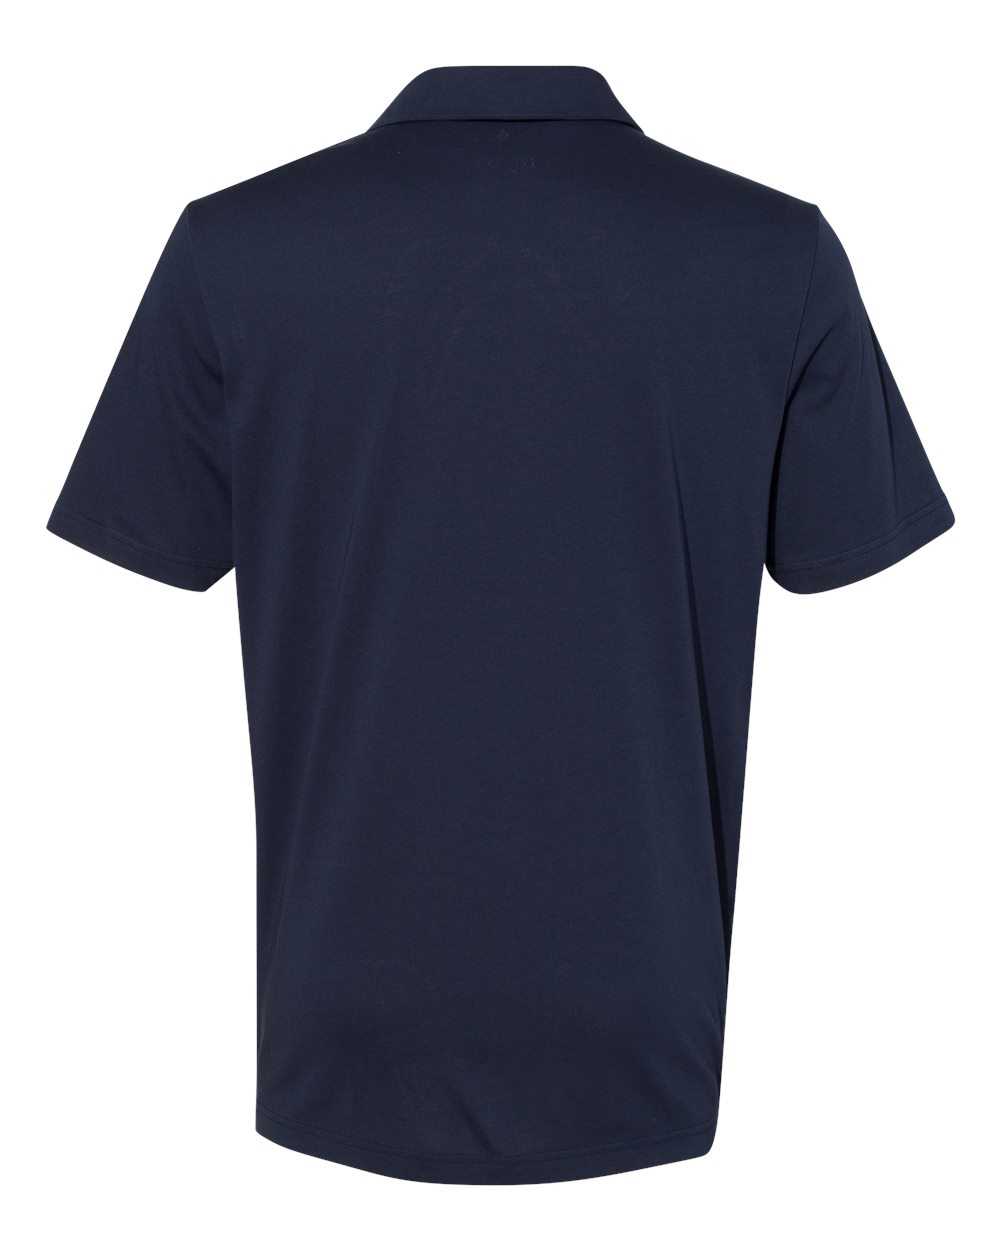 Adidas A322 Cotton Blend Sport Shirt - Navy - HIT a Double